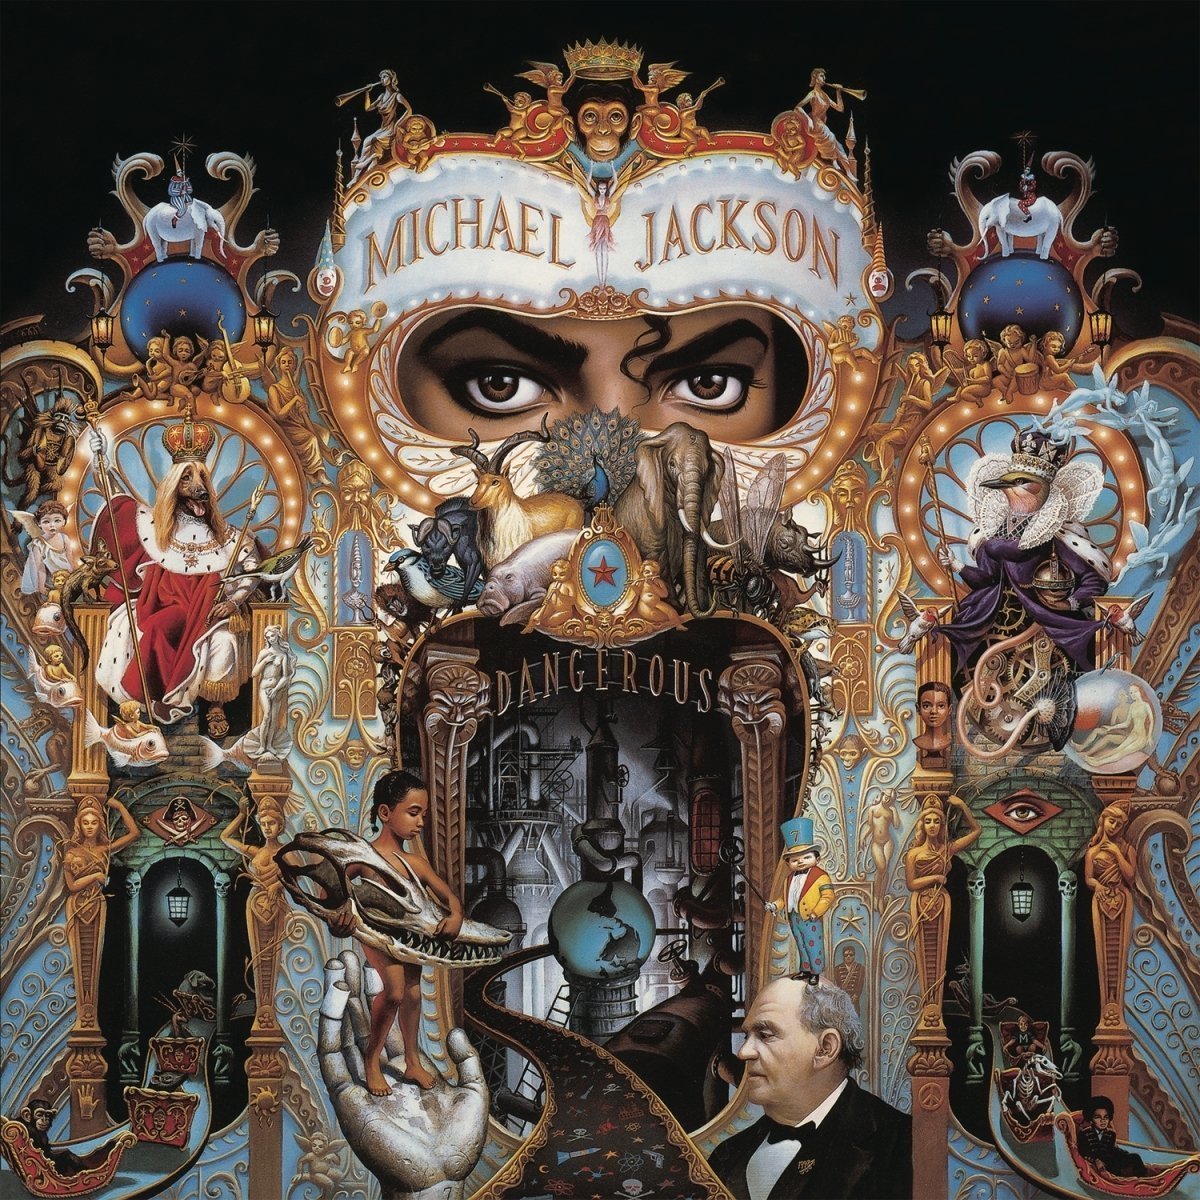 Michael Jackson Dangerous (2 LP) Michael Jackson